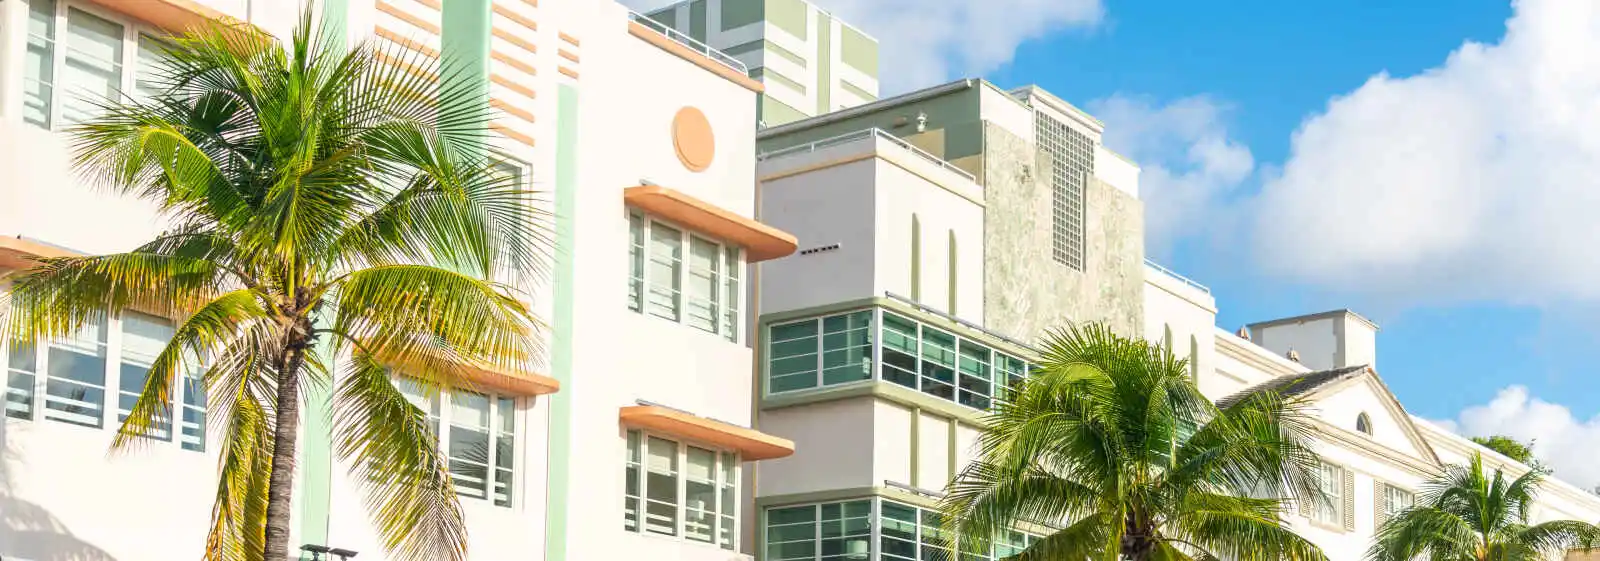 Bâtiments de style Art Déco, South Beach, Miami